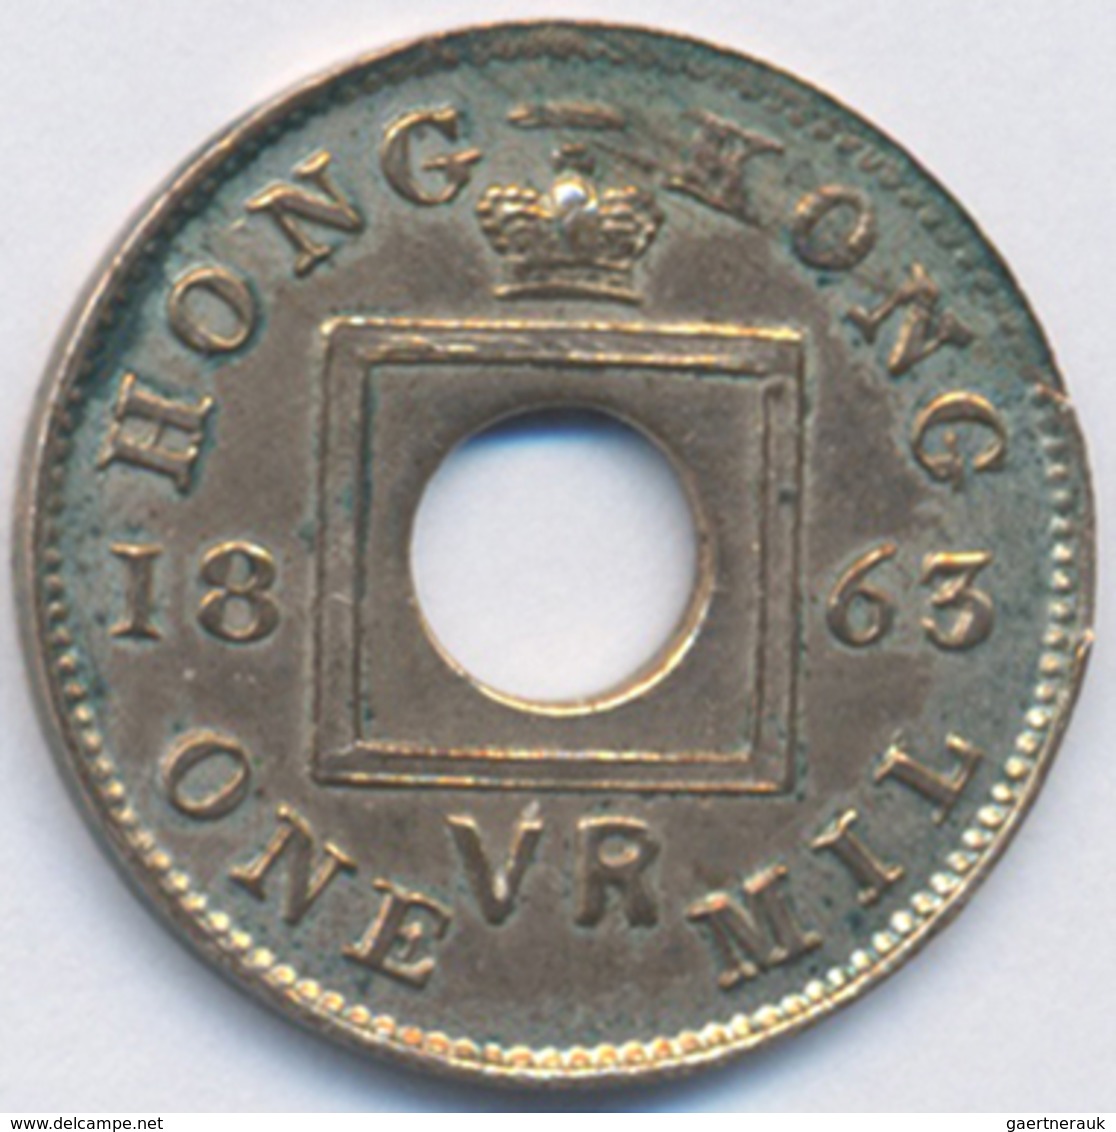 Hong Kong: Viktoria 1837-1901: 1 Mil 1863, Selten In Dieser Erhaltung, Vorzüglich-Stempelglanz. - Hong Kong